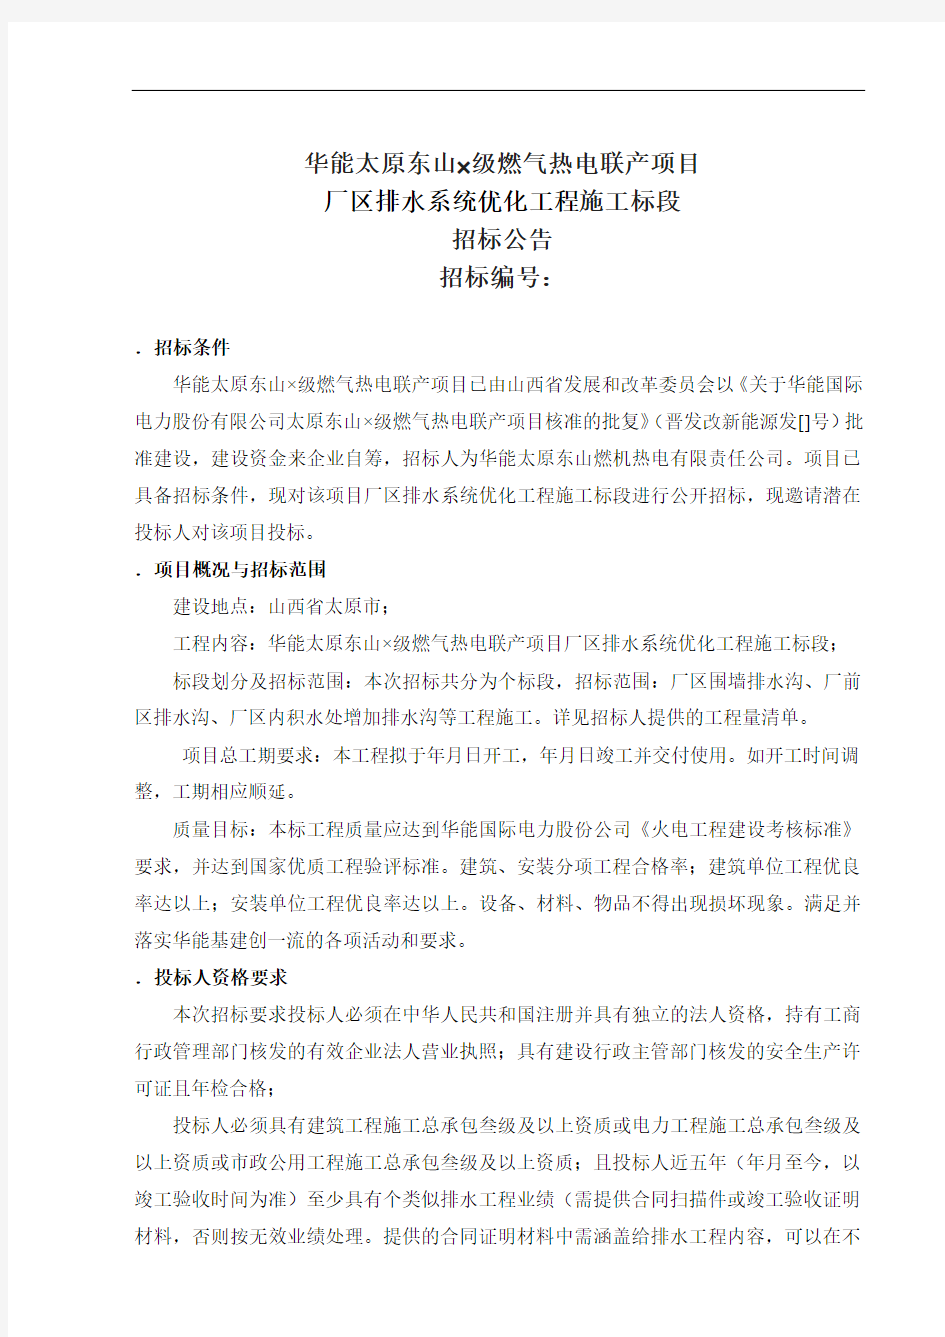 华能太原东山2F级燃气热电联产项目